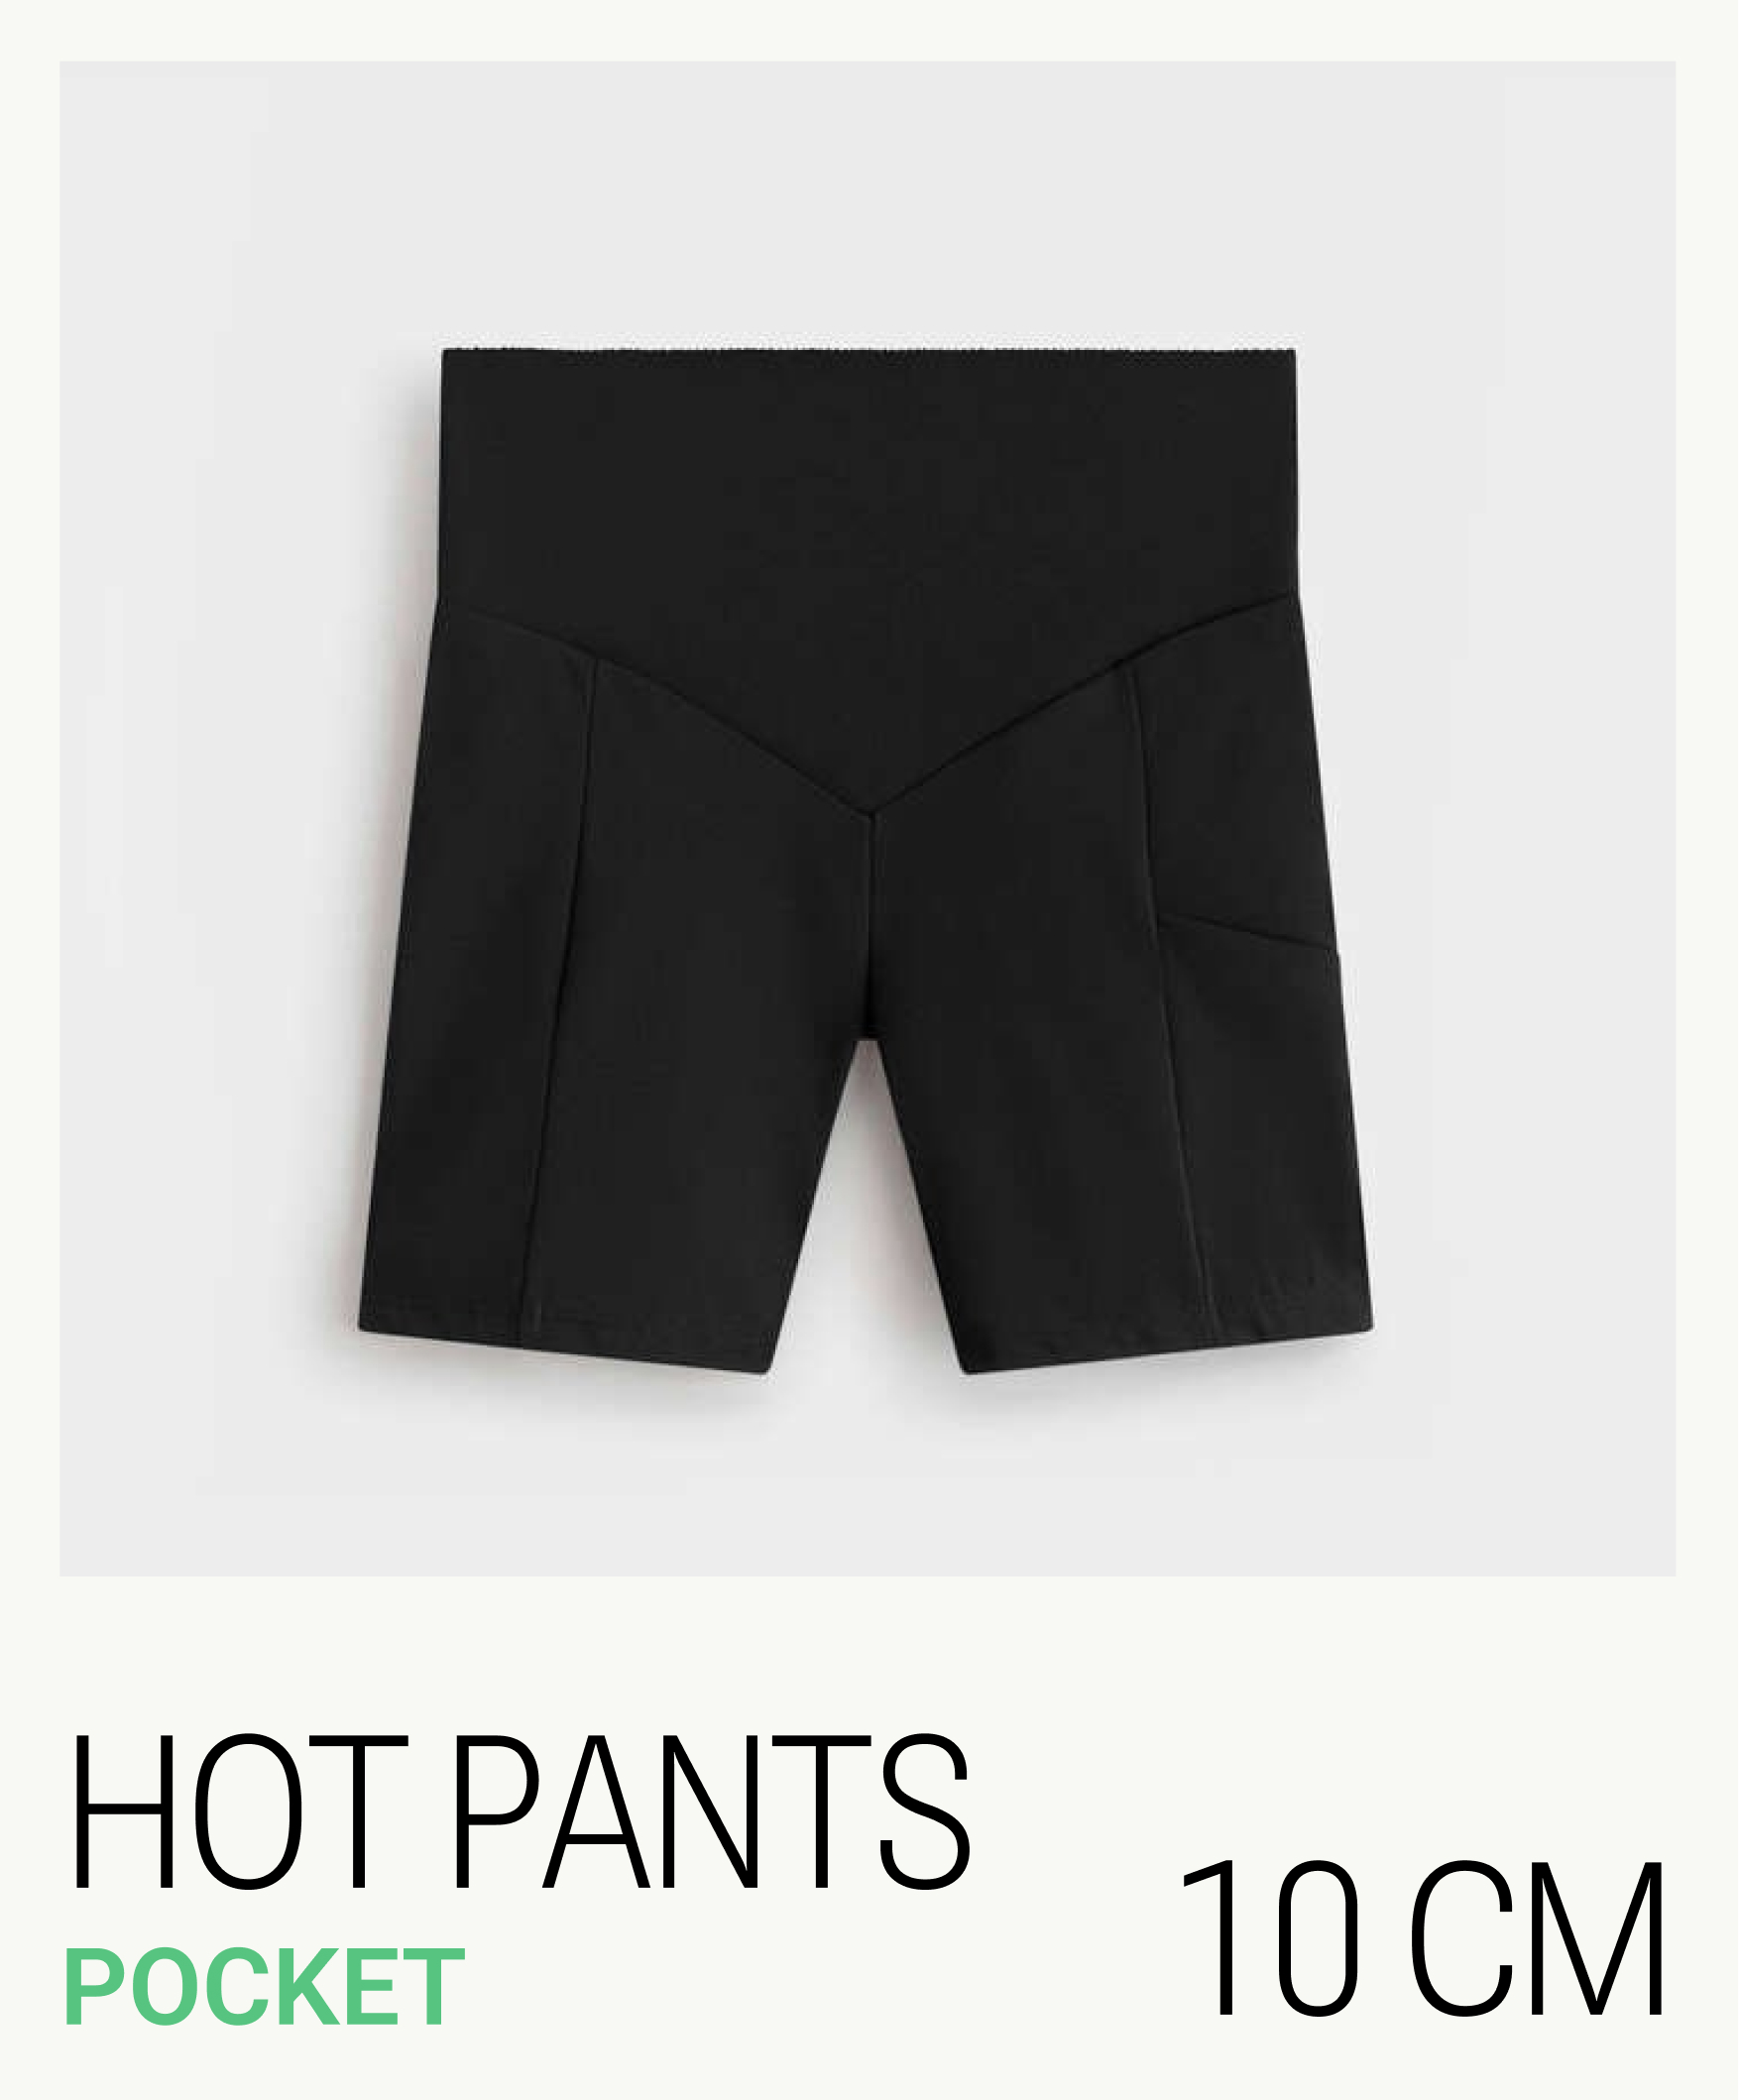 Hot pants compressive pocket 10 cm